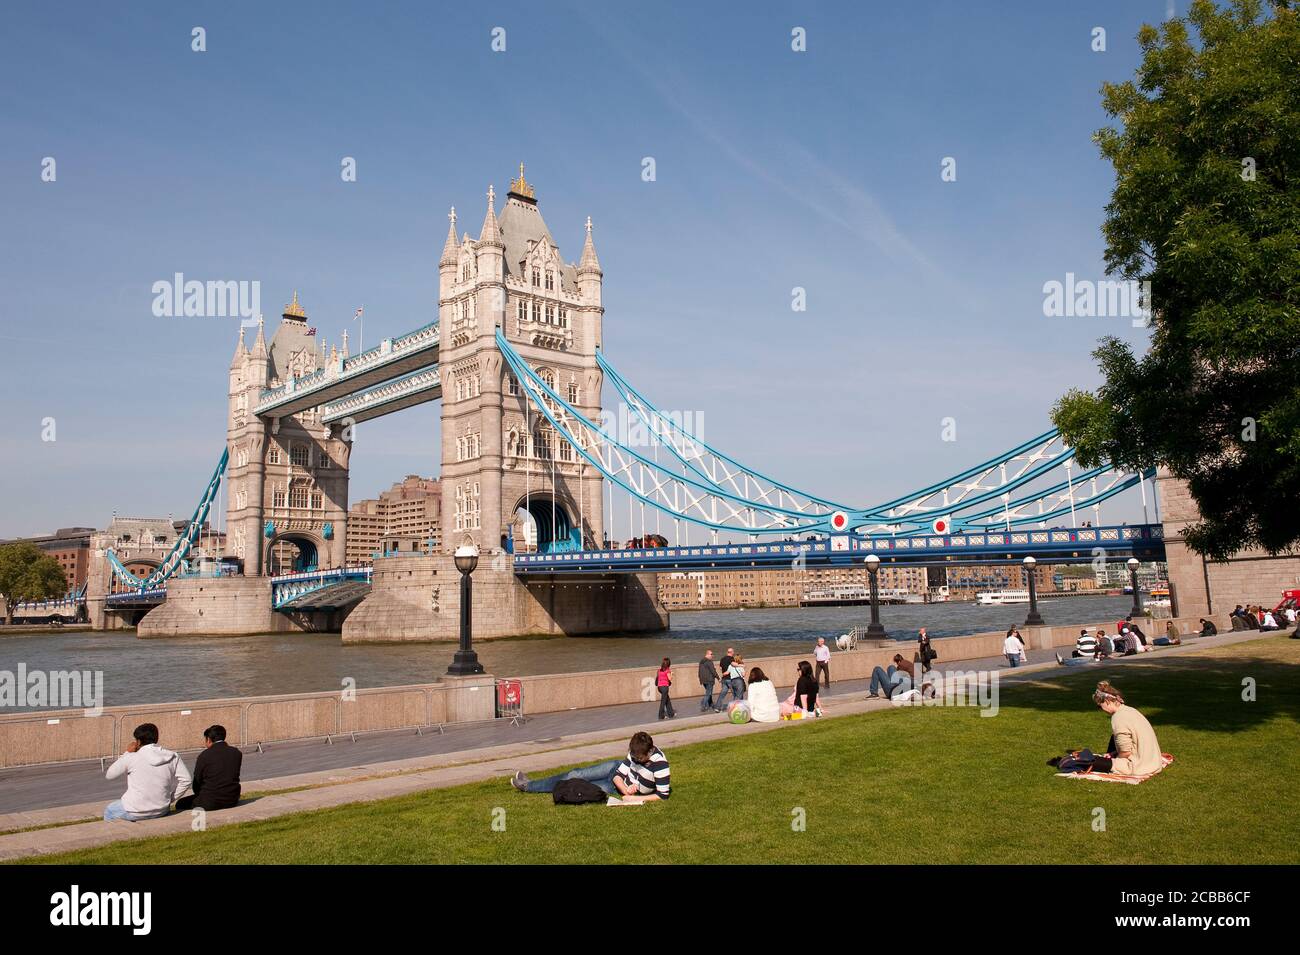 Tower Bridge, eine ikonische Brücke über die Themse in London, England. Stockfoto